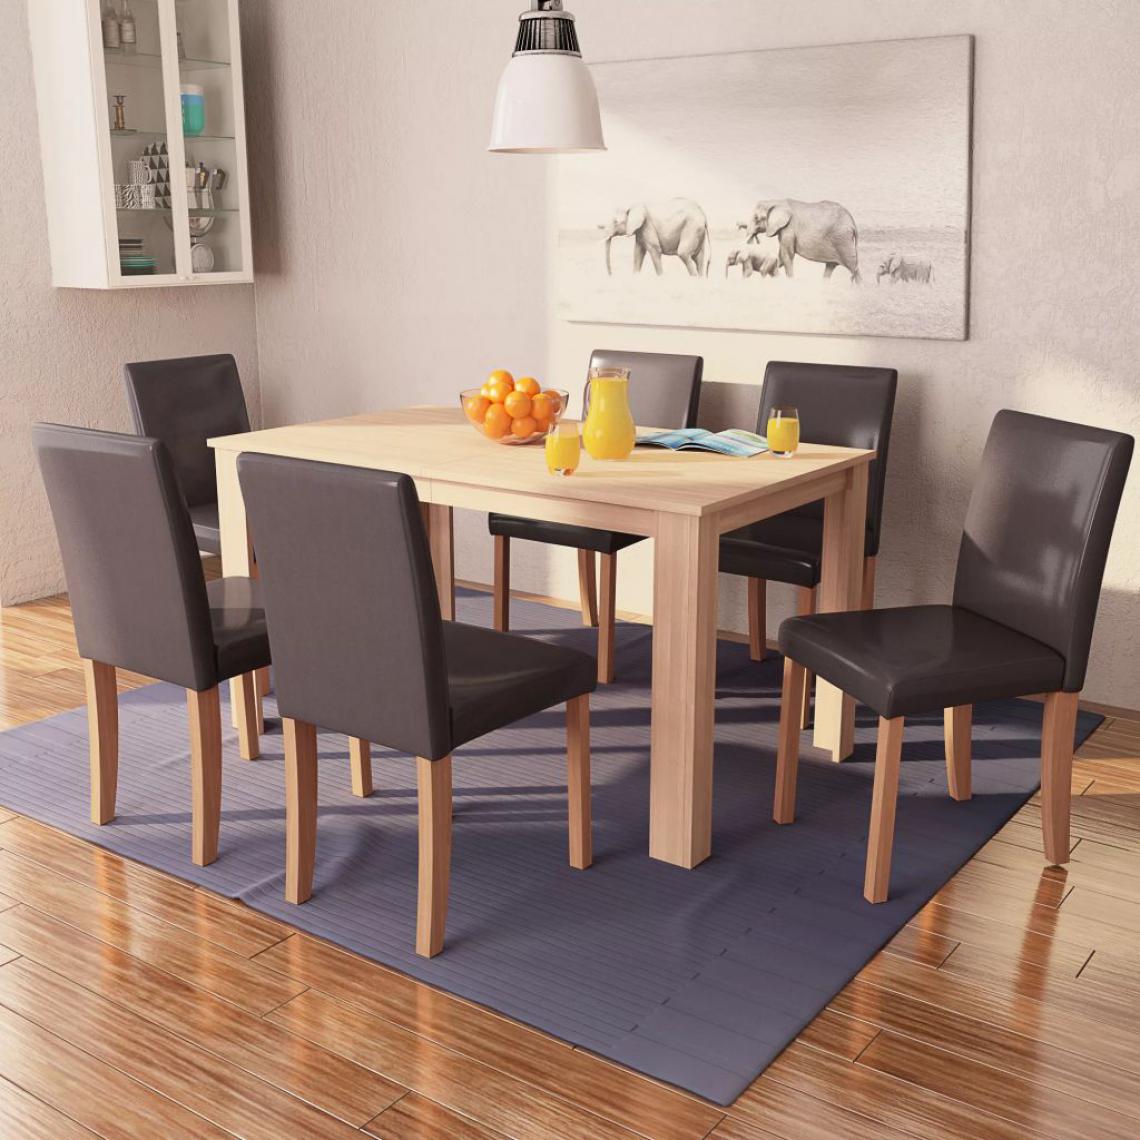 Chunhelife - Table et chaises 7 pcs Cuir synthétique Chêne Marron - Tables à manger